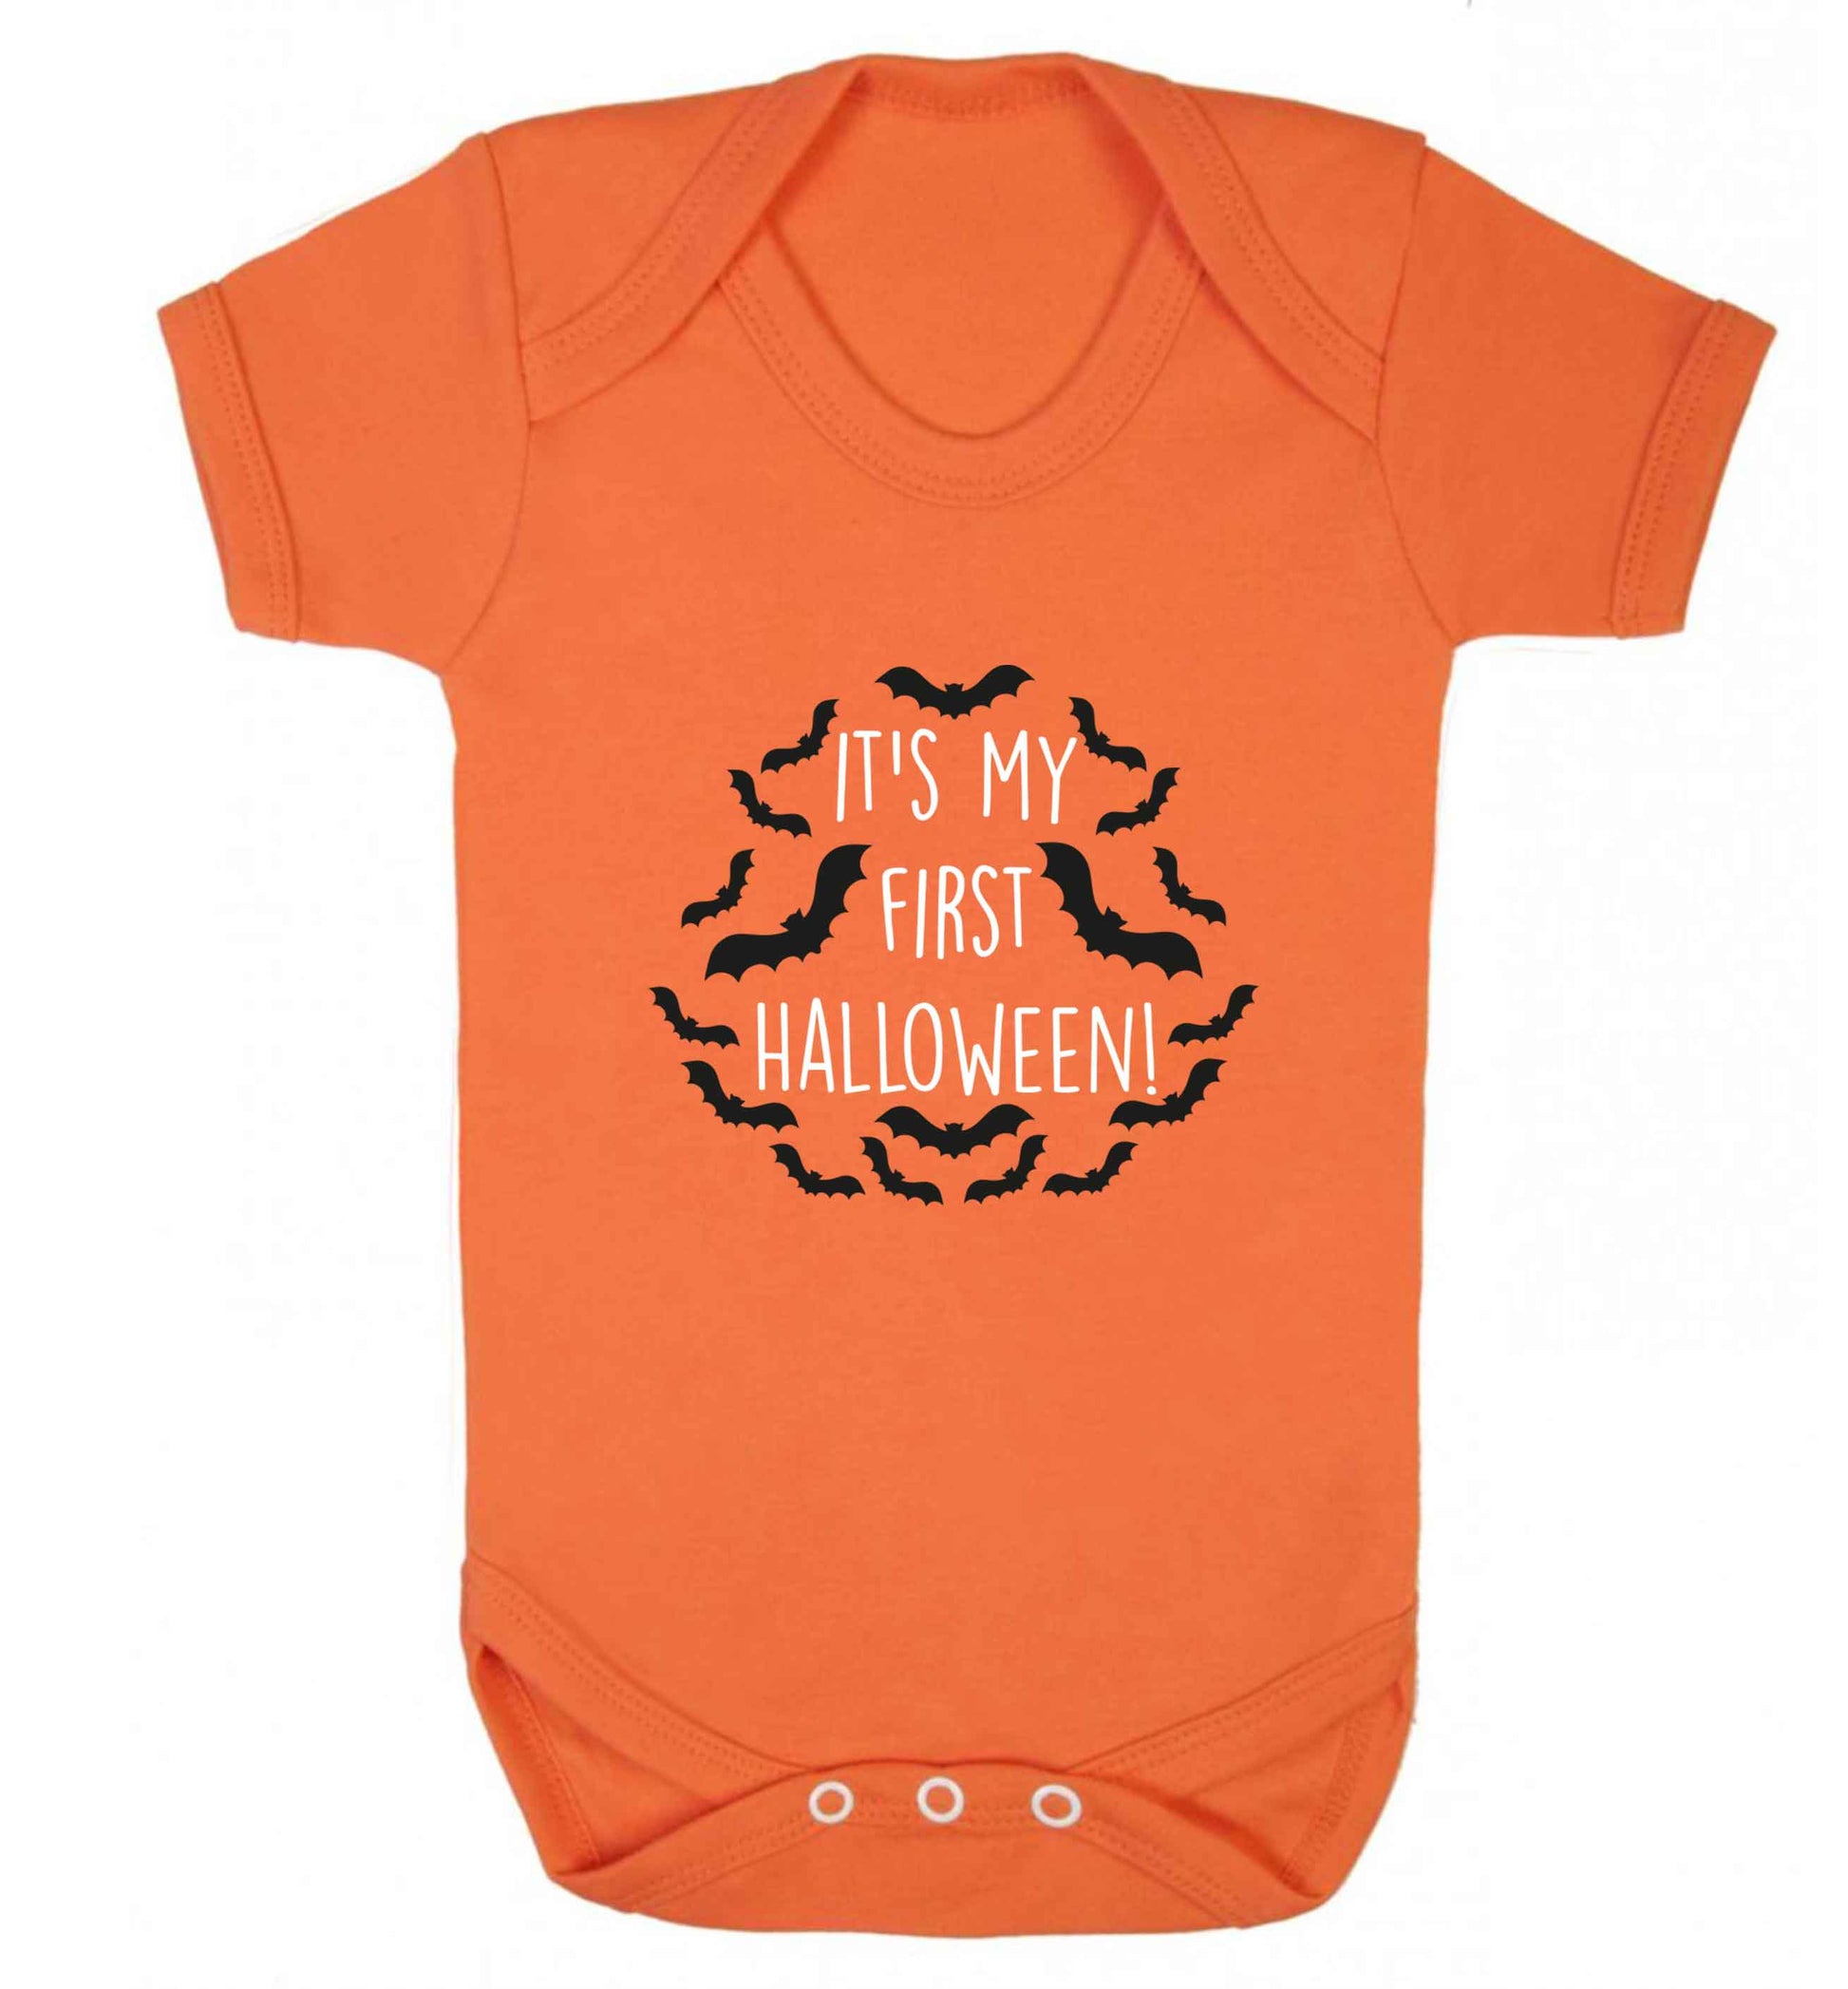 It's my first halloween - bat border baby vest orange 18-24 months